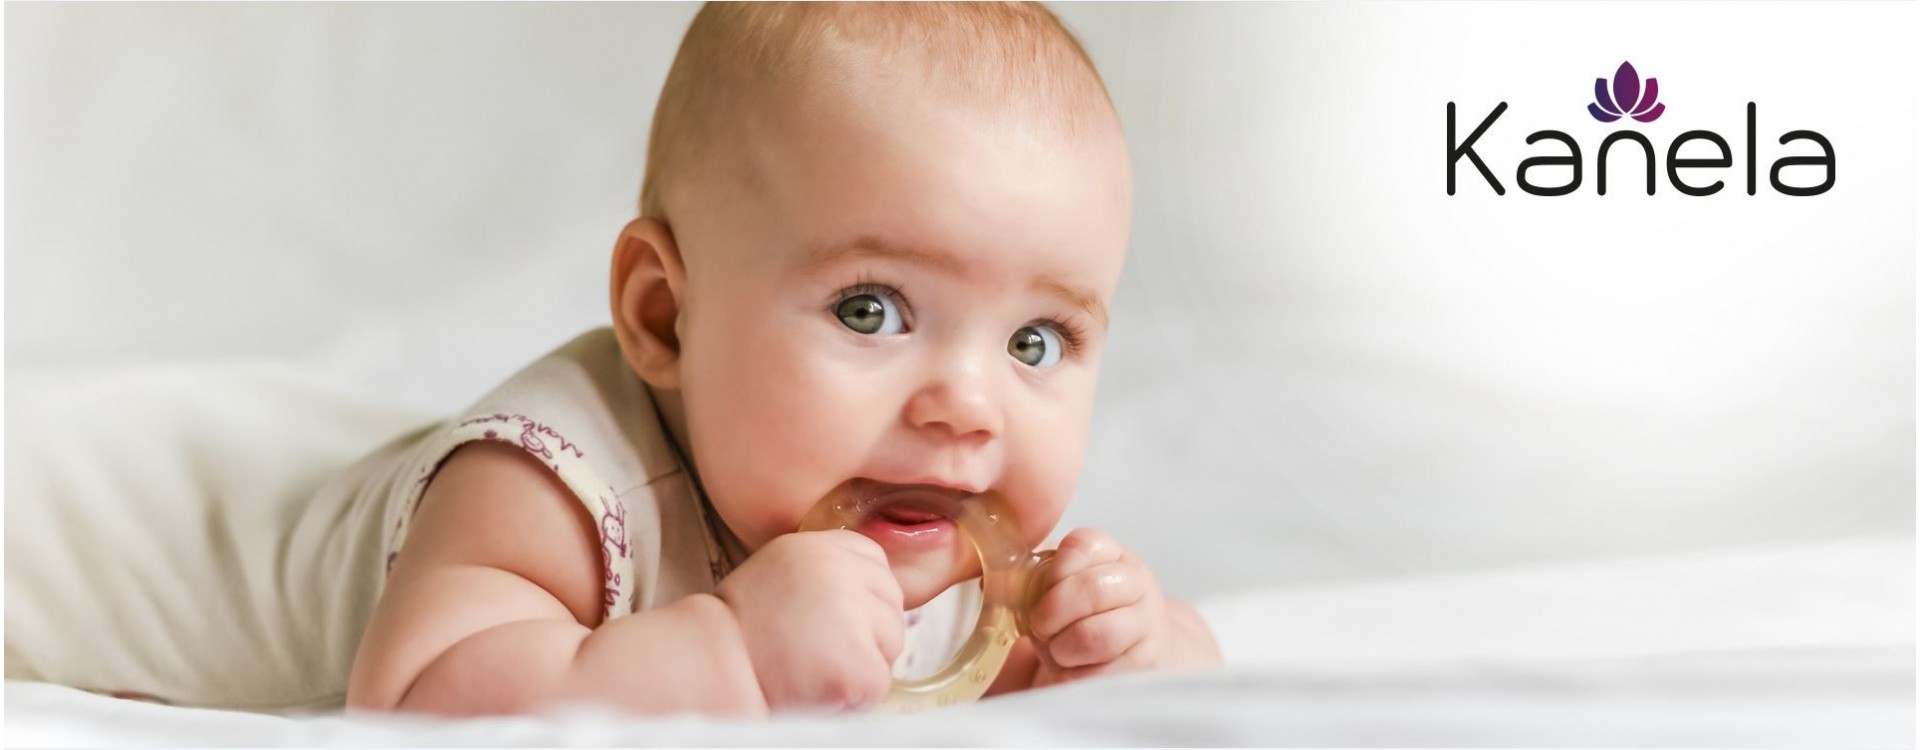 Mon bébé fait ses dents - comment puis-je l'aider?